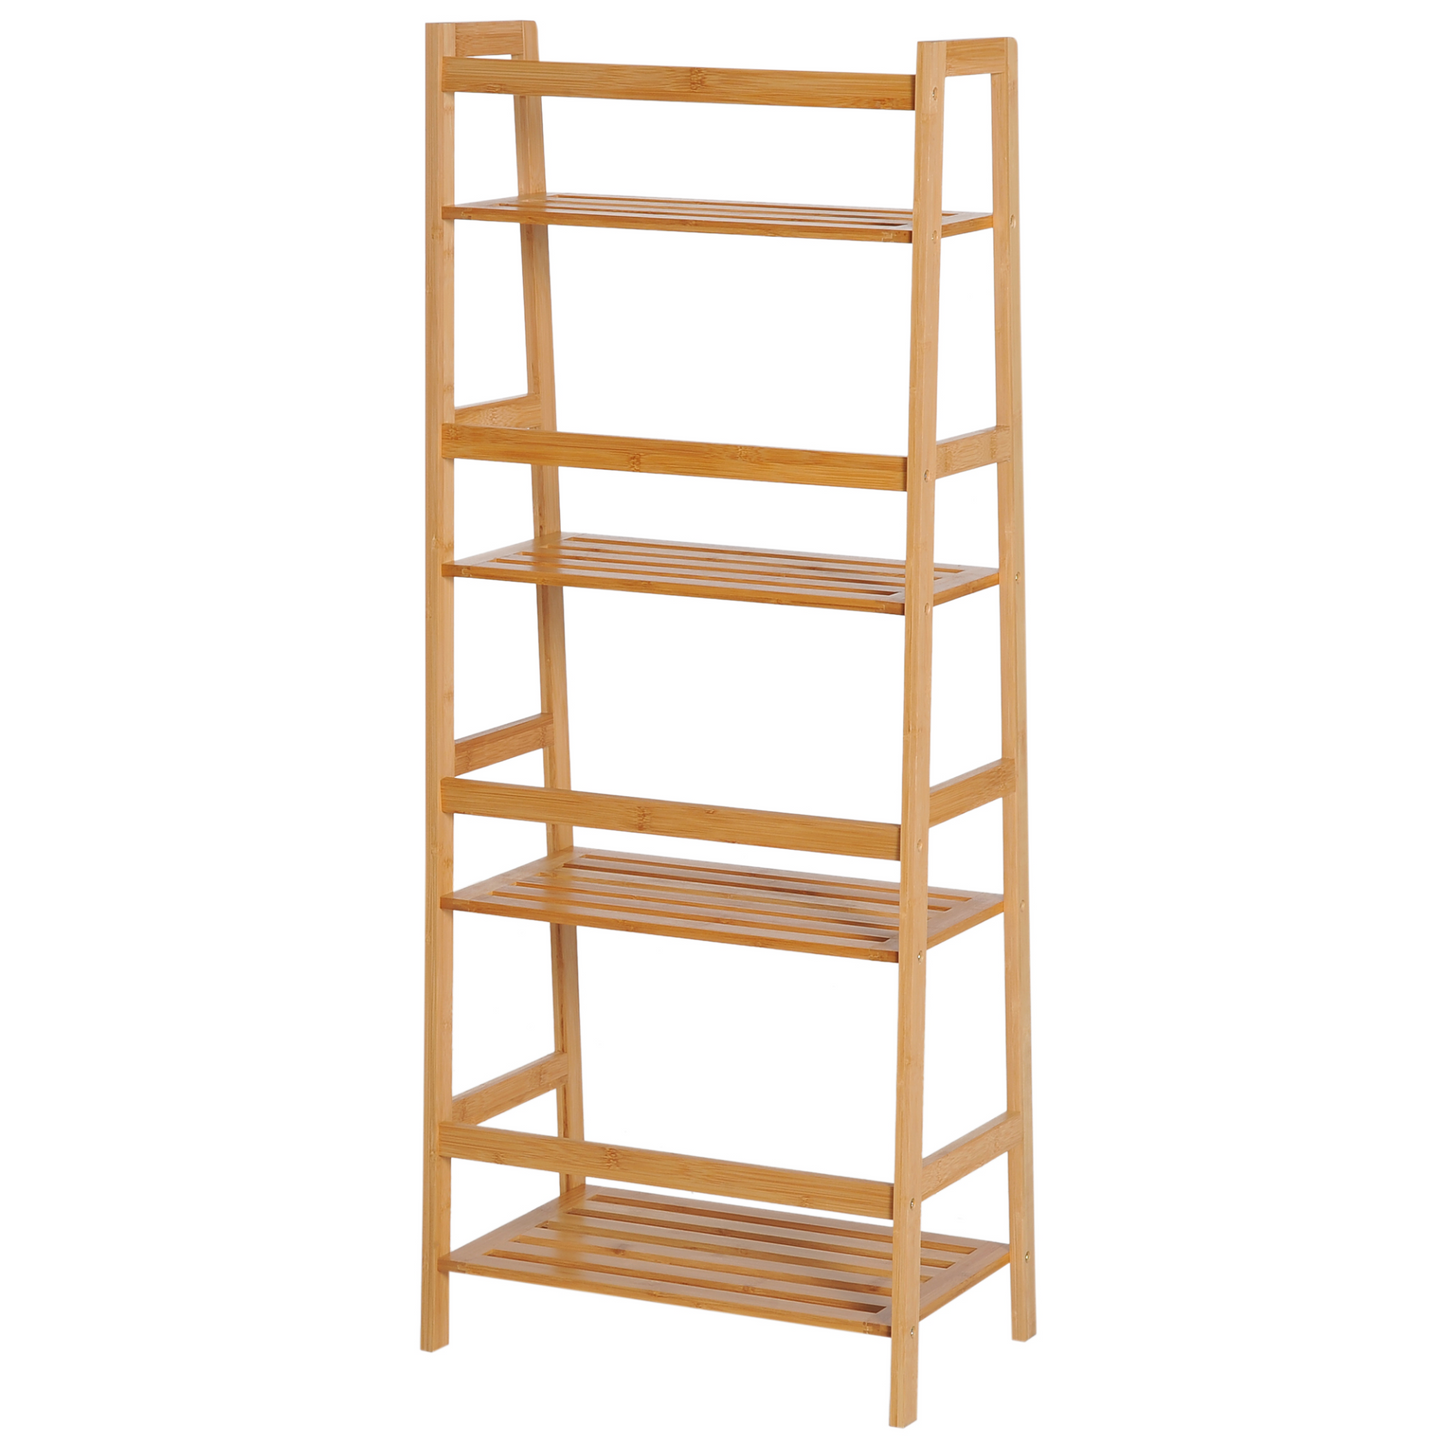 HOMCOM Bookshelf Unit Shelving 4 Tiers, Ladder Shelf, DIY Plant Shelving Stand, 48cmx31.5cmx120cm, Bamboo